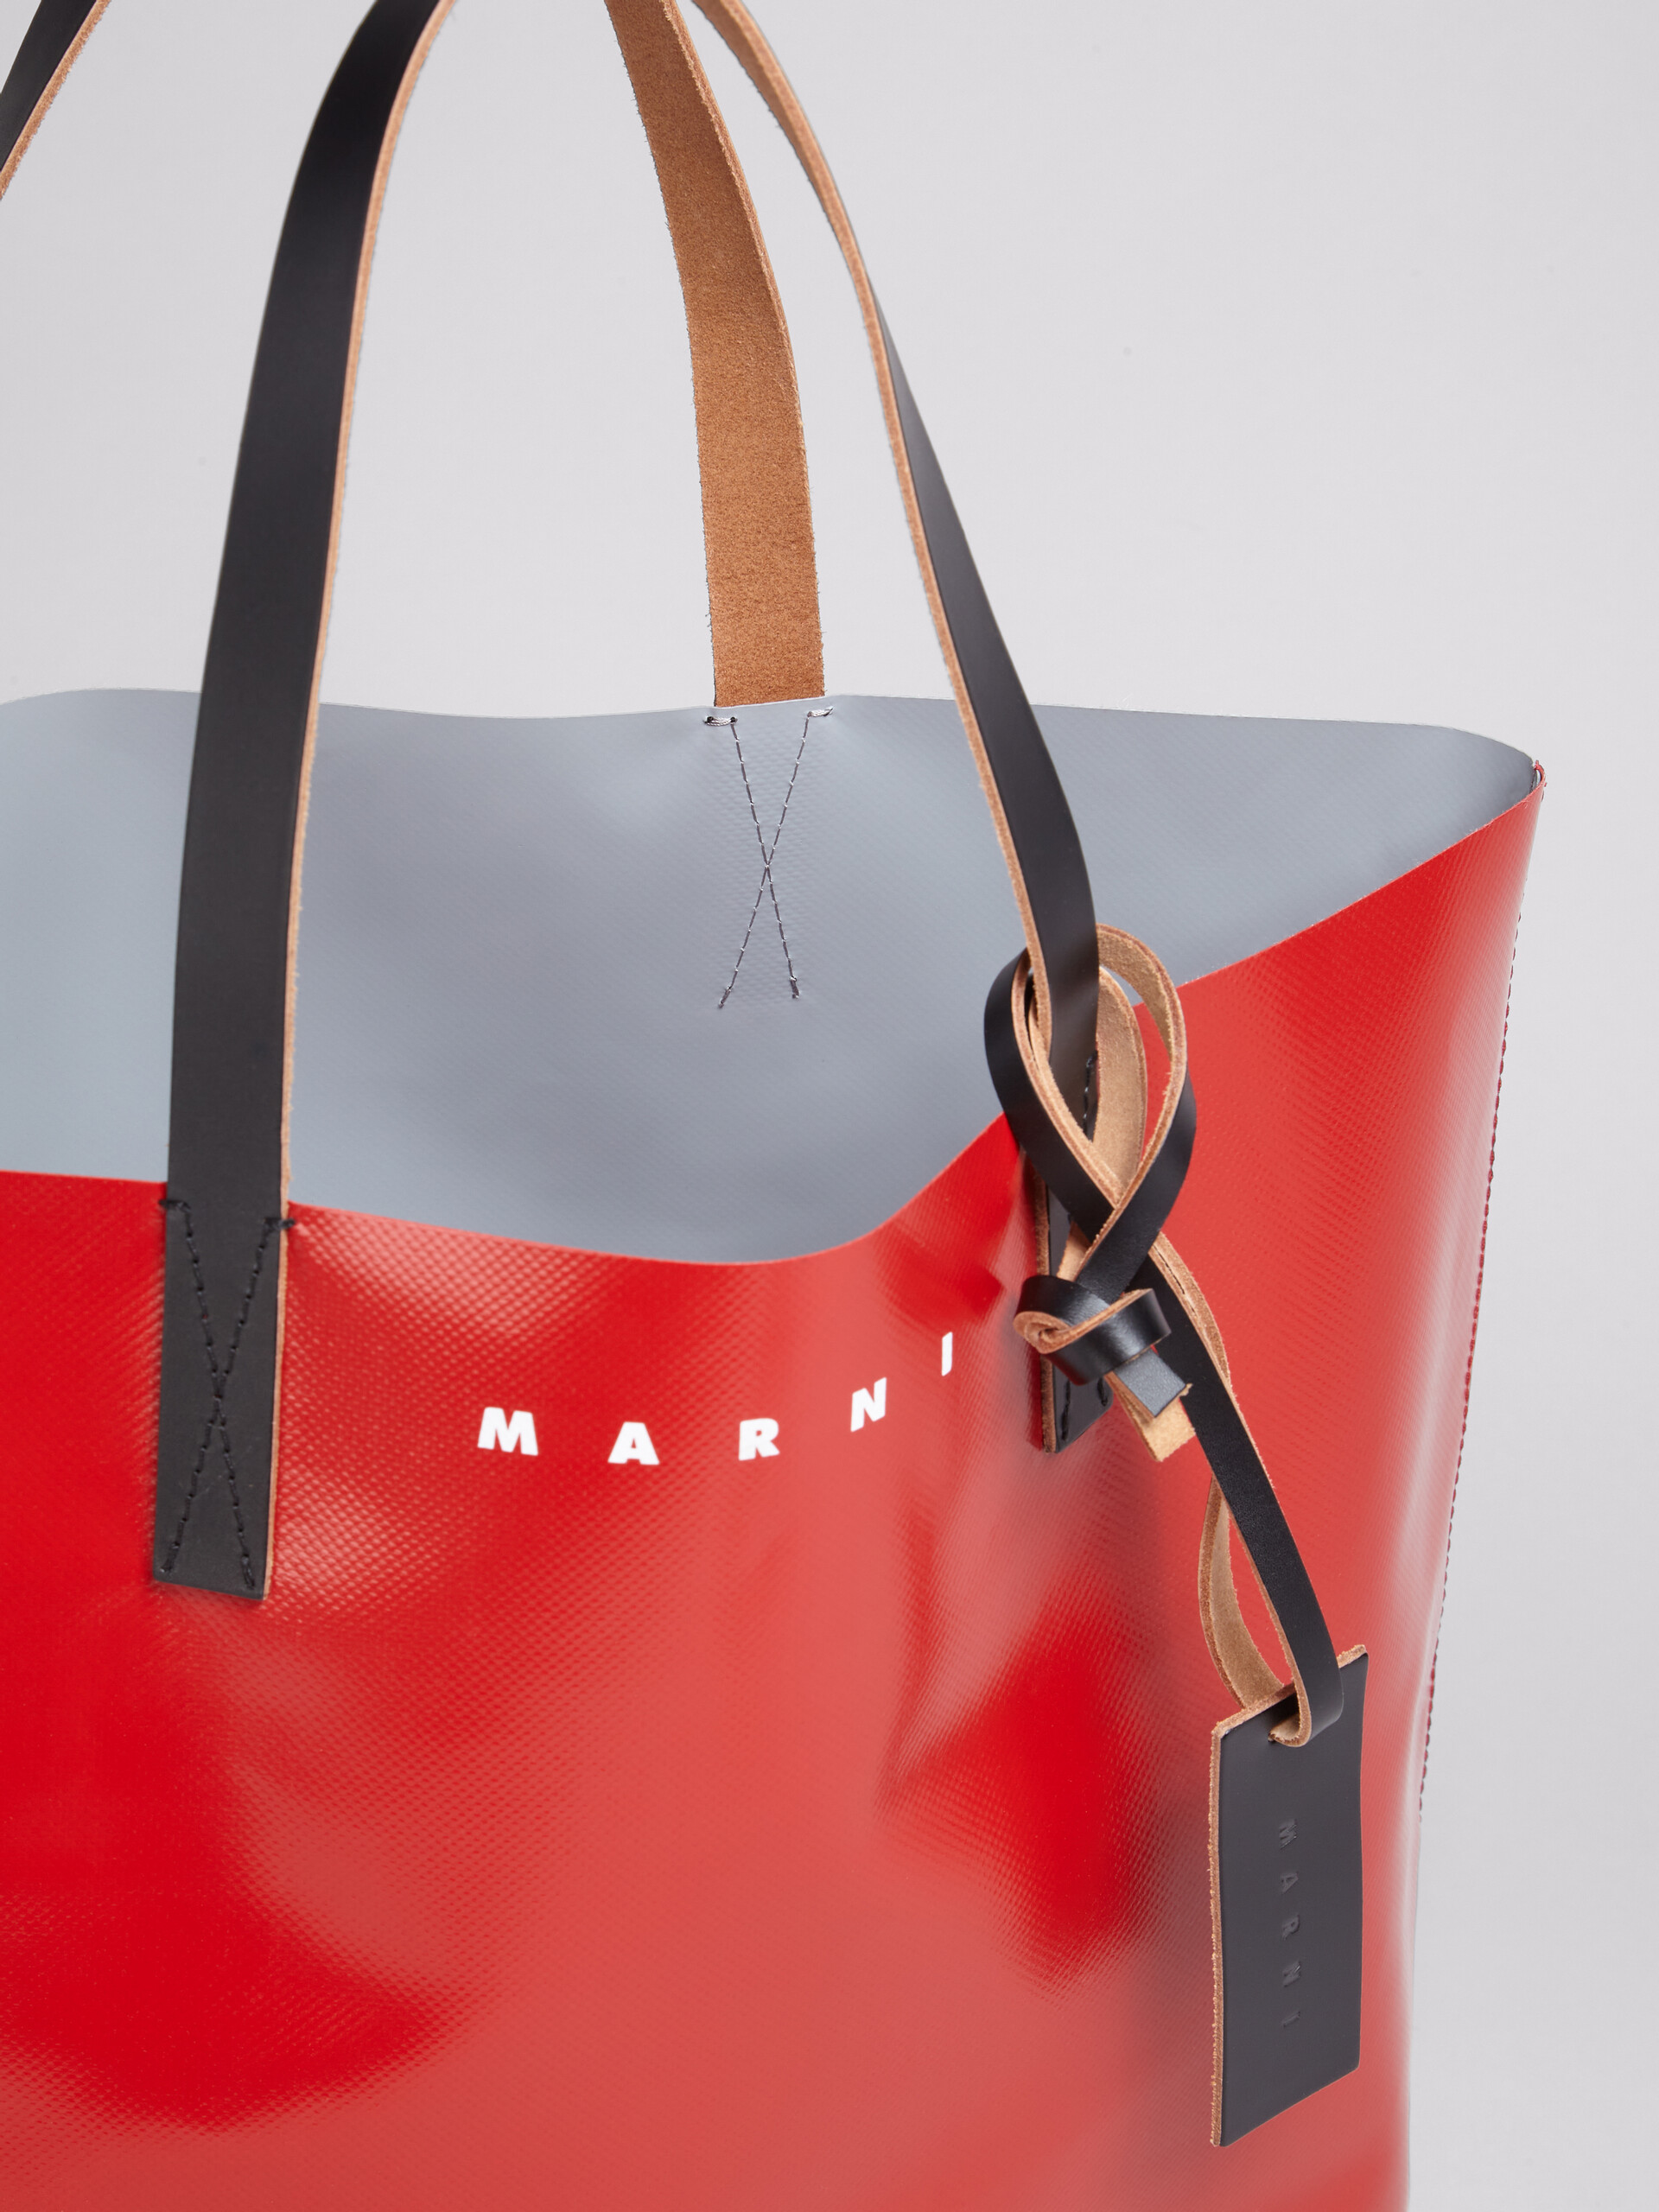 Borsa shopping in PVC rosso e grigio con manici in pelle - Borse shopping - Image 3